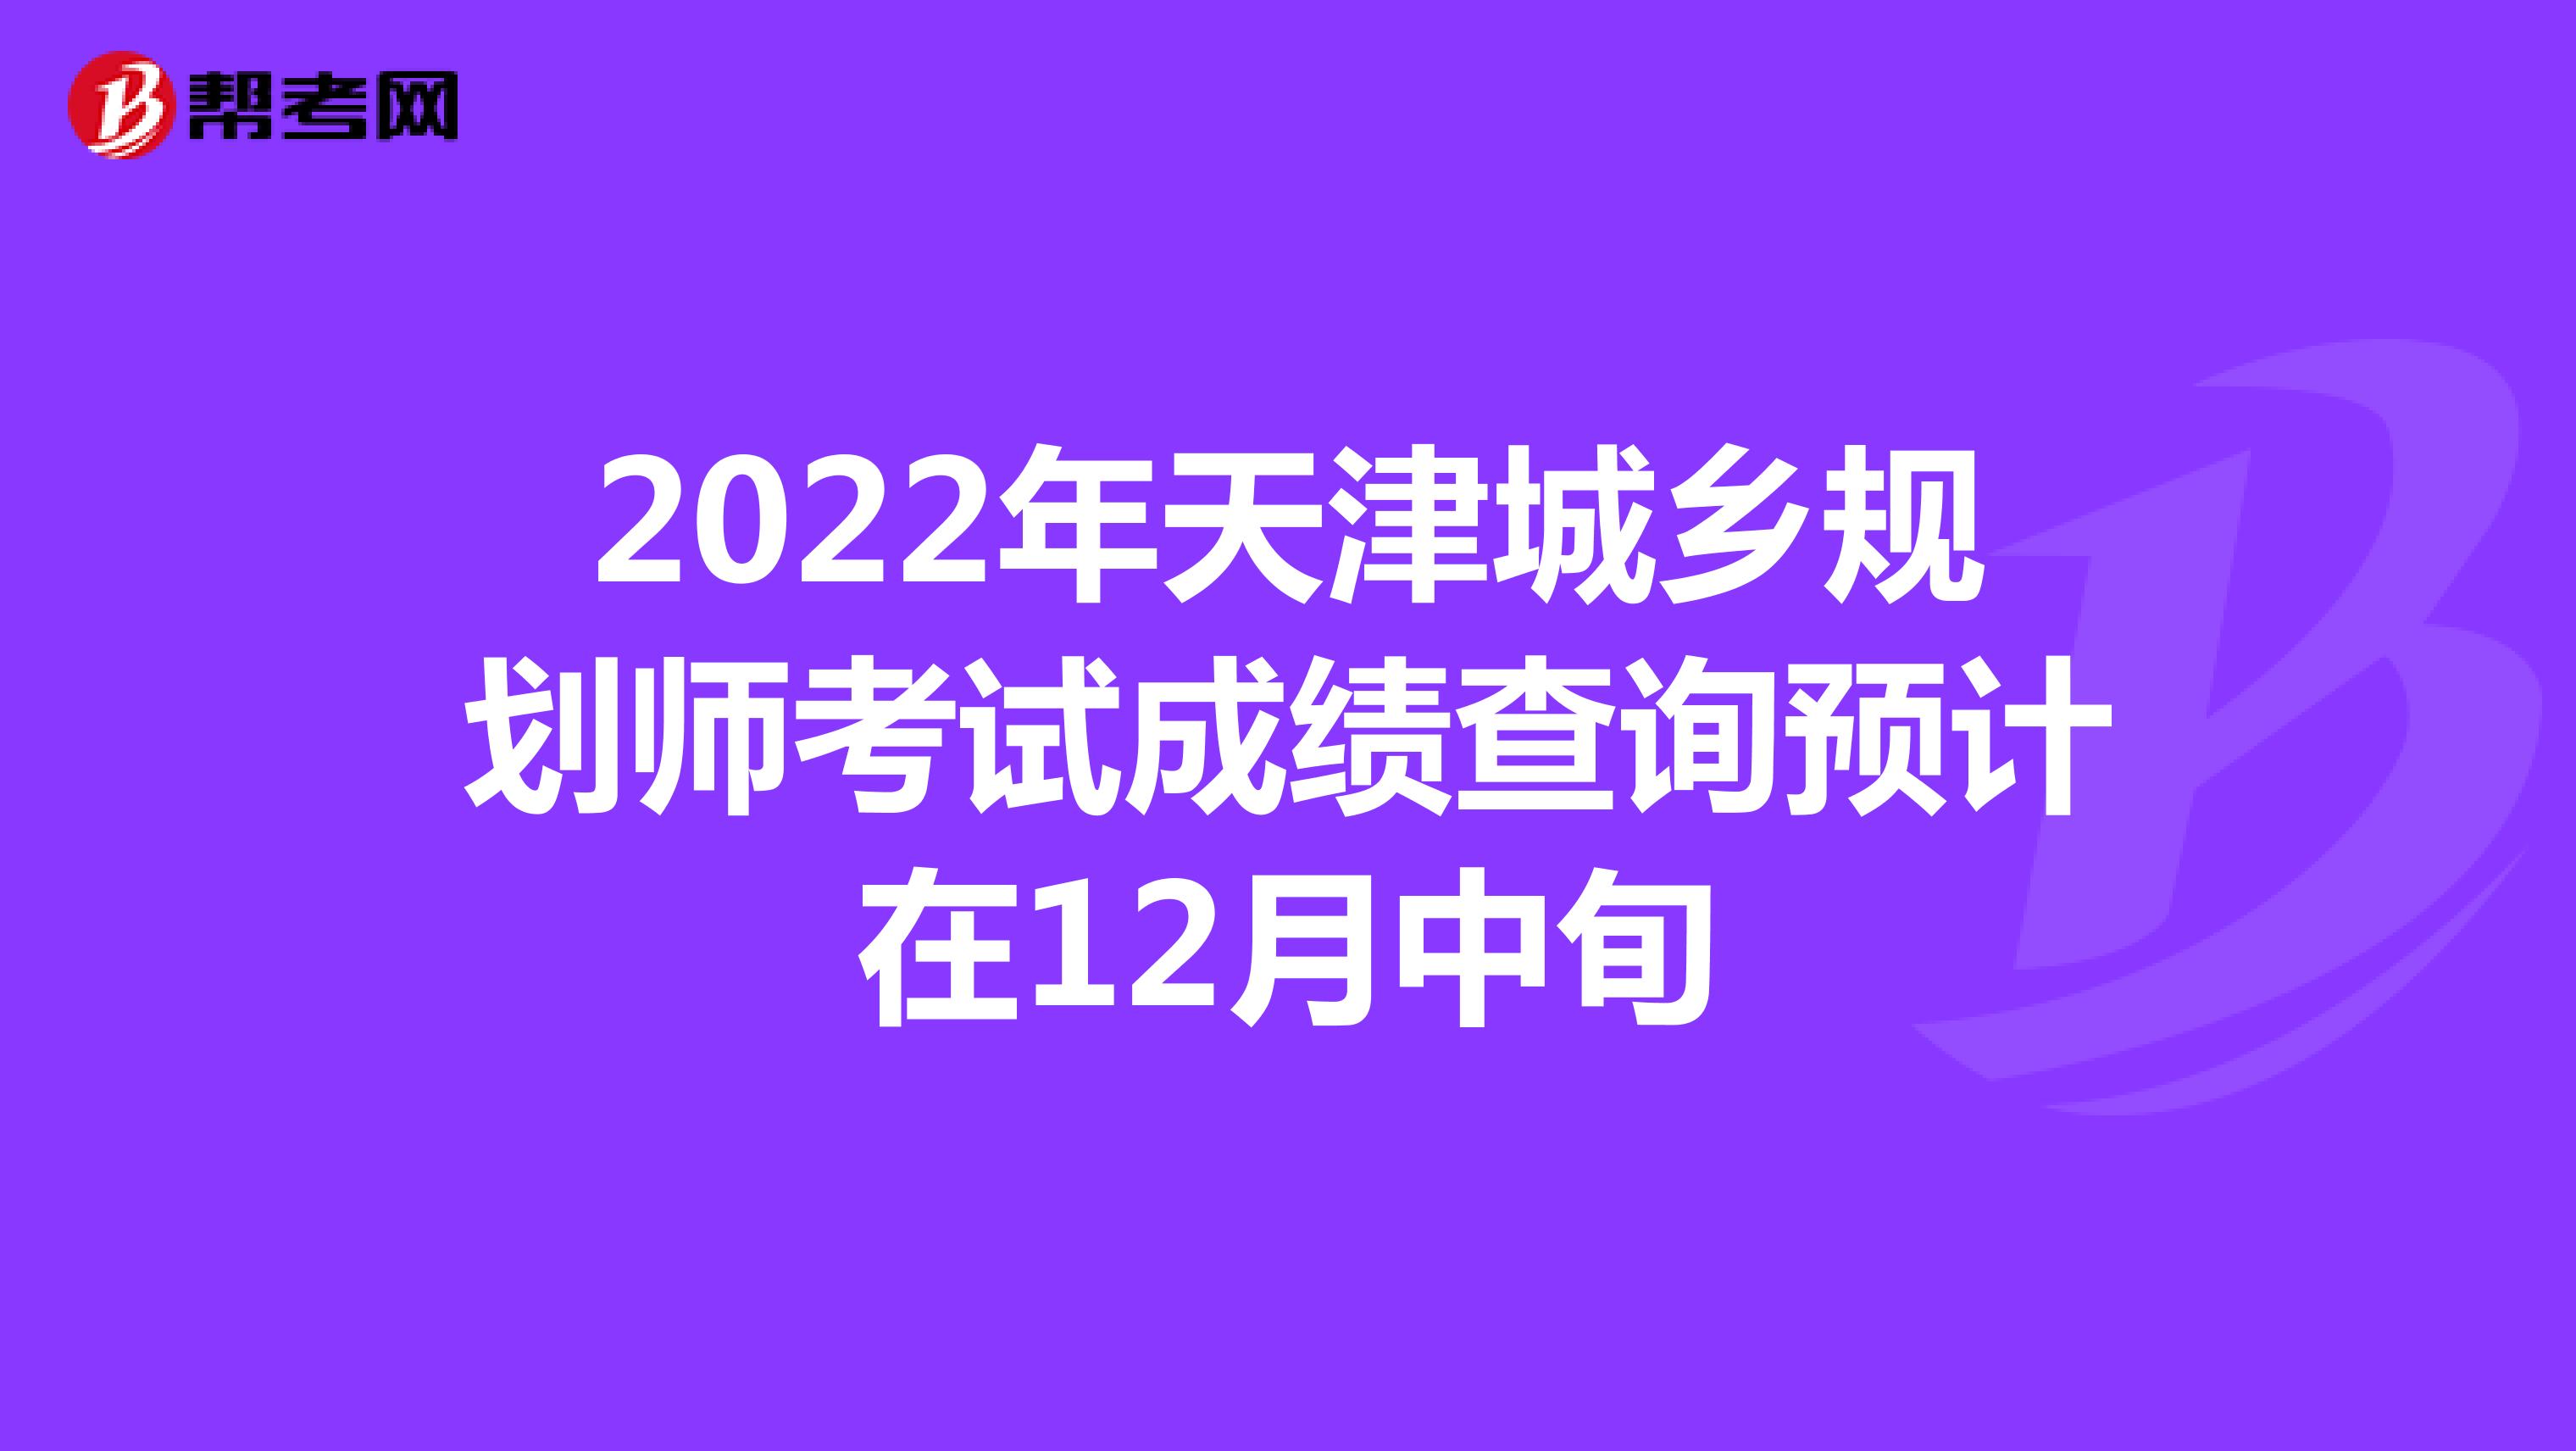 2022年天津城乡规划师考试成绩查询预计在12月中旬